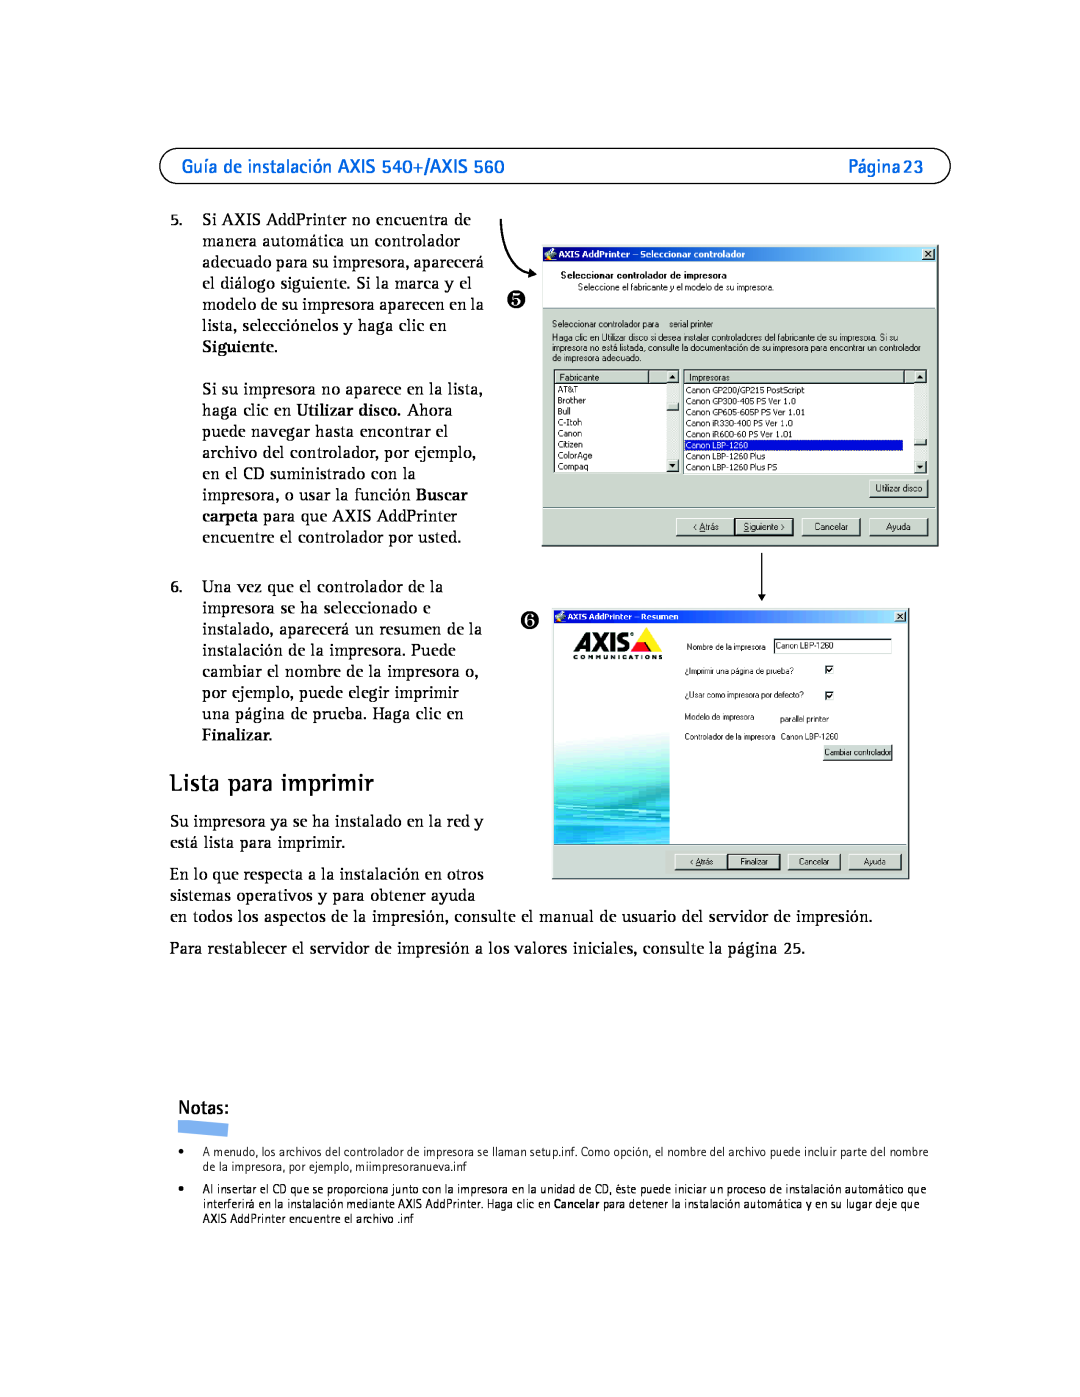 Axis Communications 560 manual Lista para imprimir, Guía de instalación AXIS 540+/AXIS, Notas 